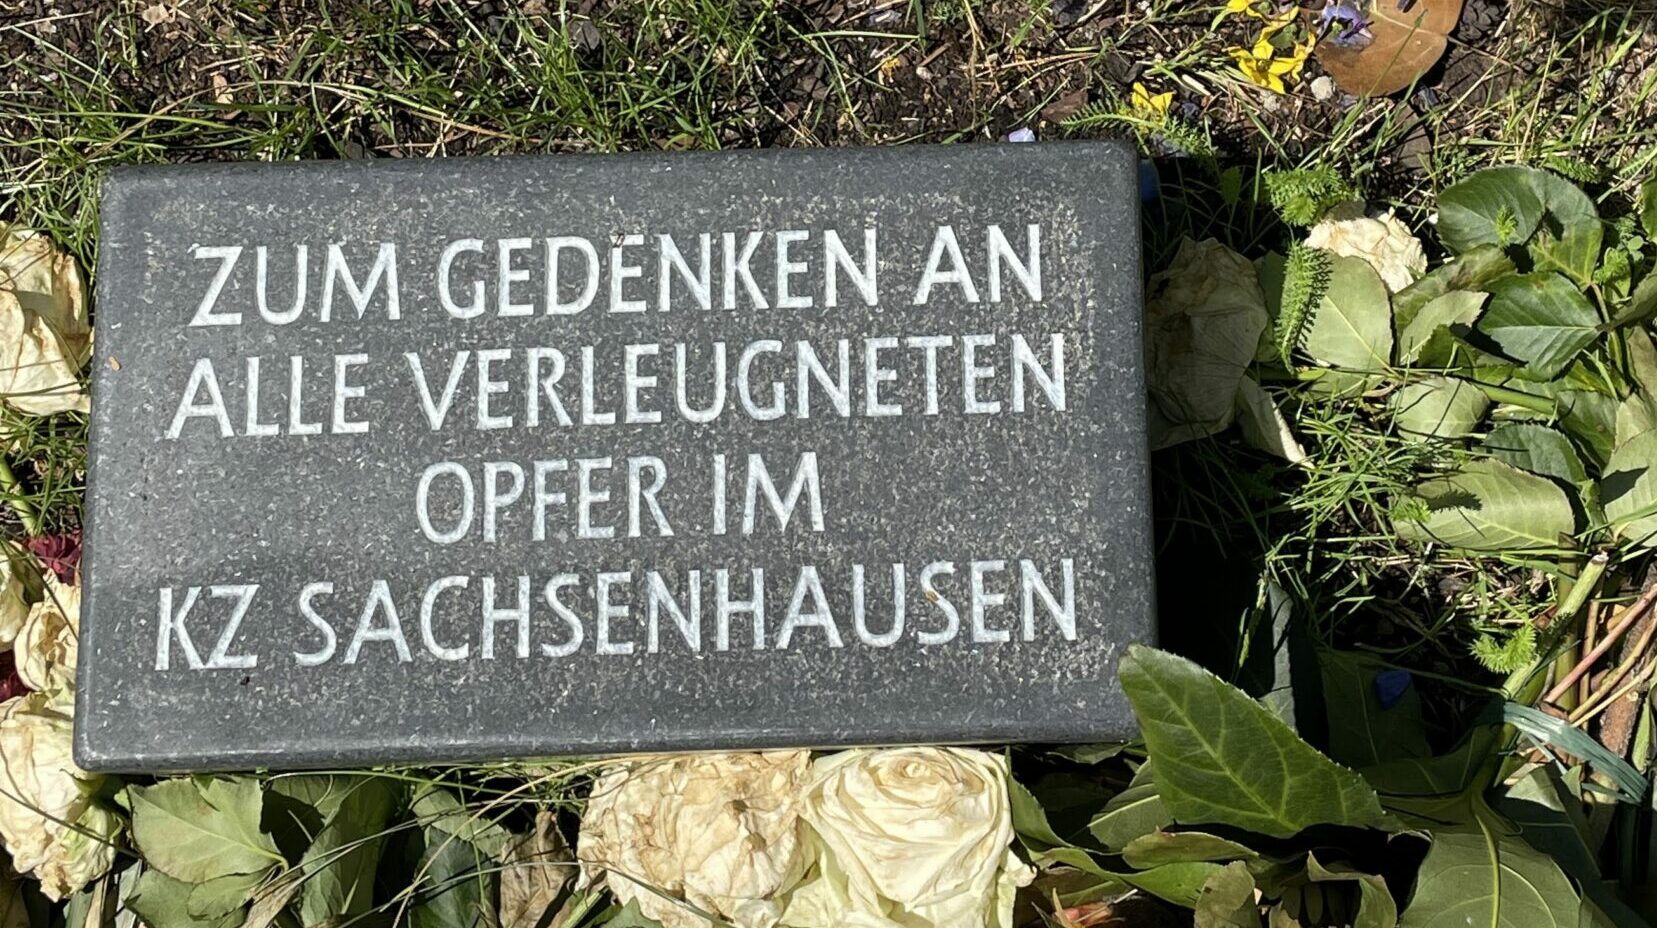 Gedenktafel in Sachsenhausen mit der Inschrift: "In Gedenken an alle verleugneten Opfer im KZ Sachsenhausen"